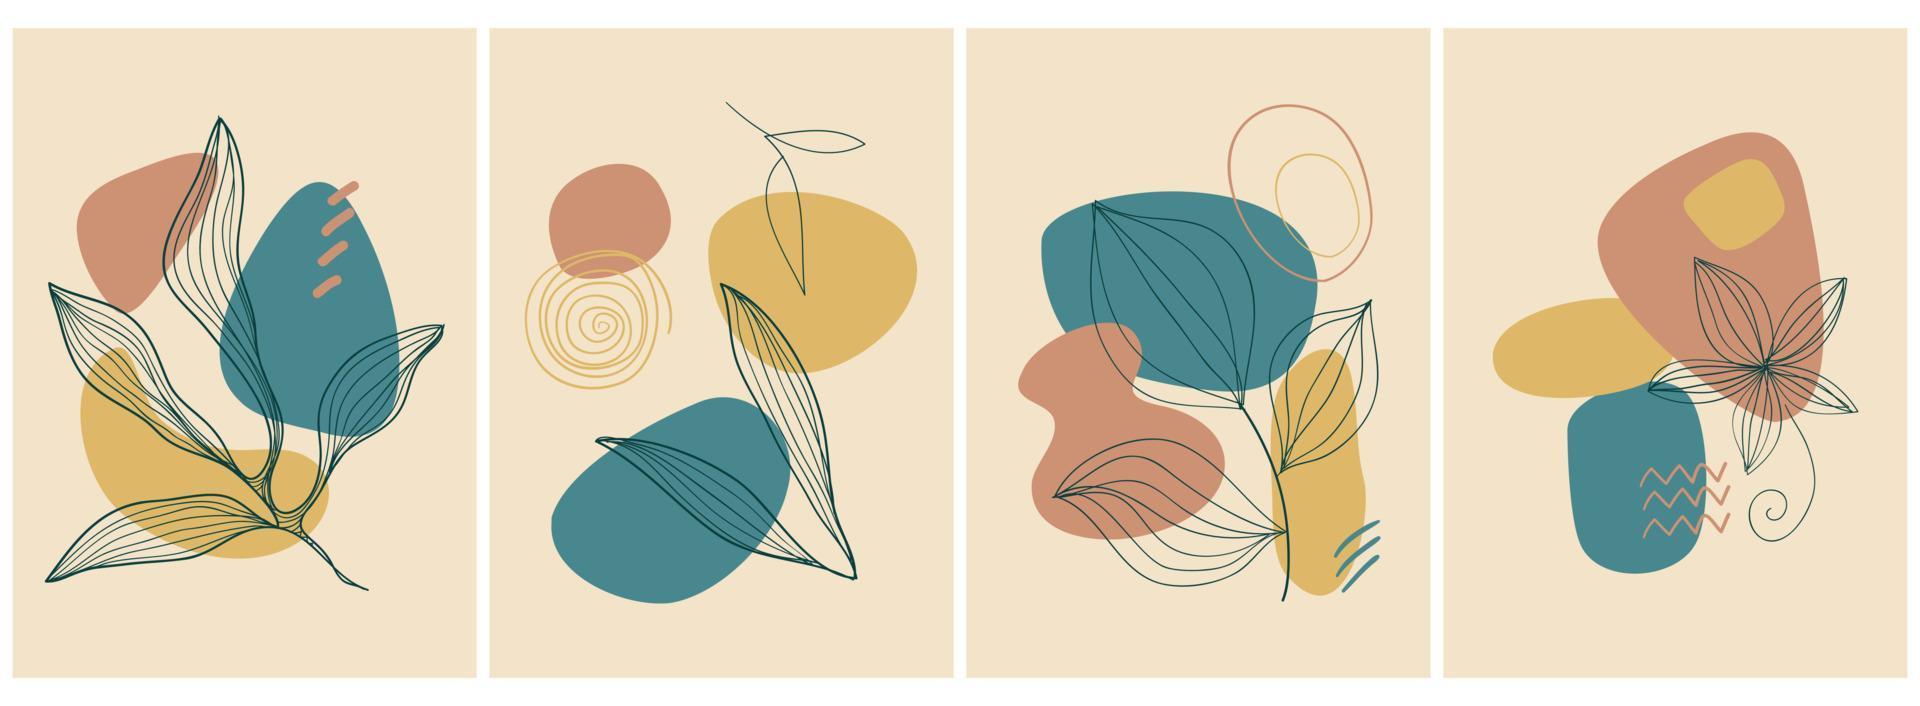 colección de carteles de arte contemporáneo en colores pastel. papel abstracto corta elementos geométricos y trazos, hojas y puntos. gran diseño para medios sociales, postales, impresión. vector